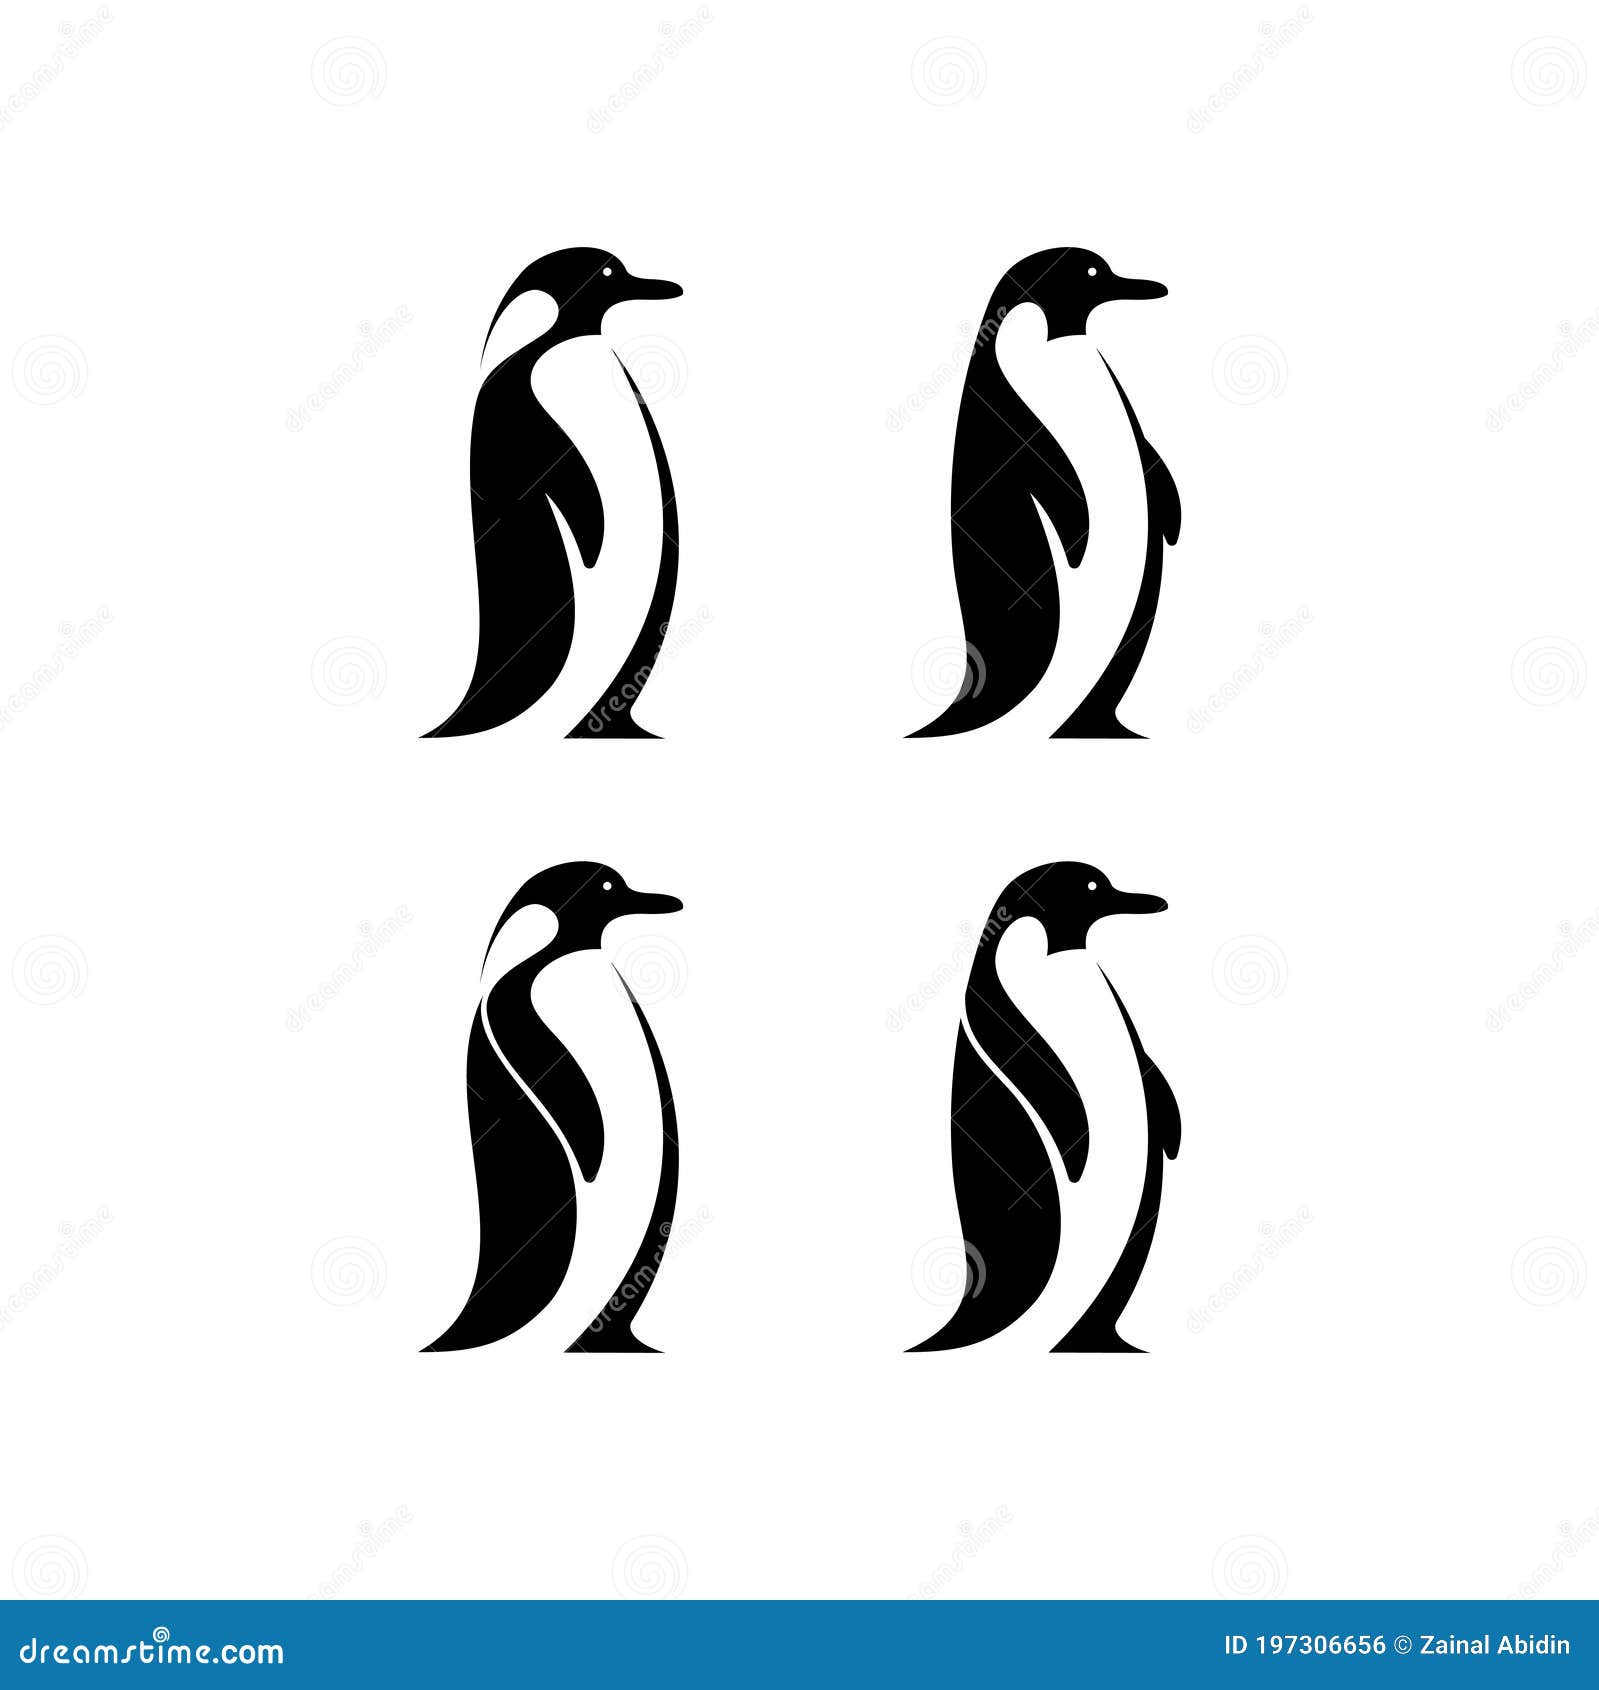 Penguin Set Logo Illustration, Good for Mascot Delivery or Logistic ...